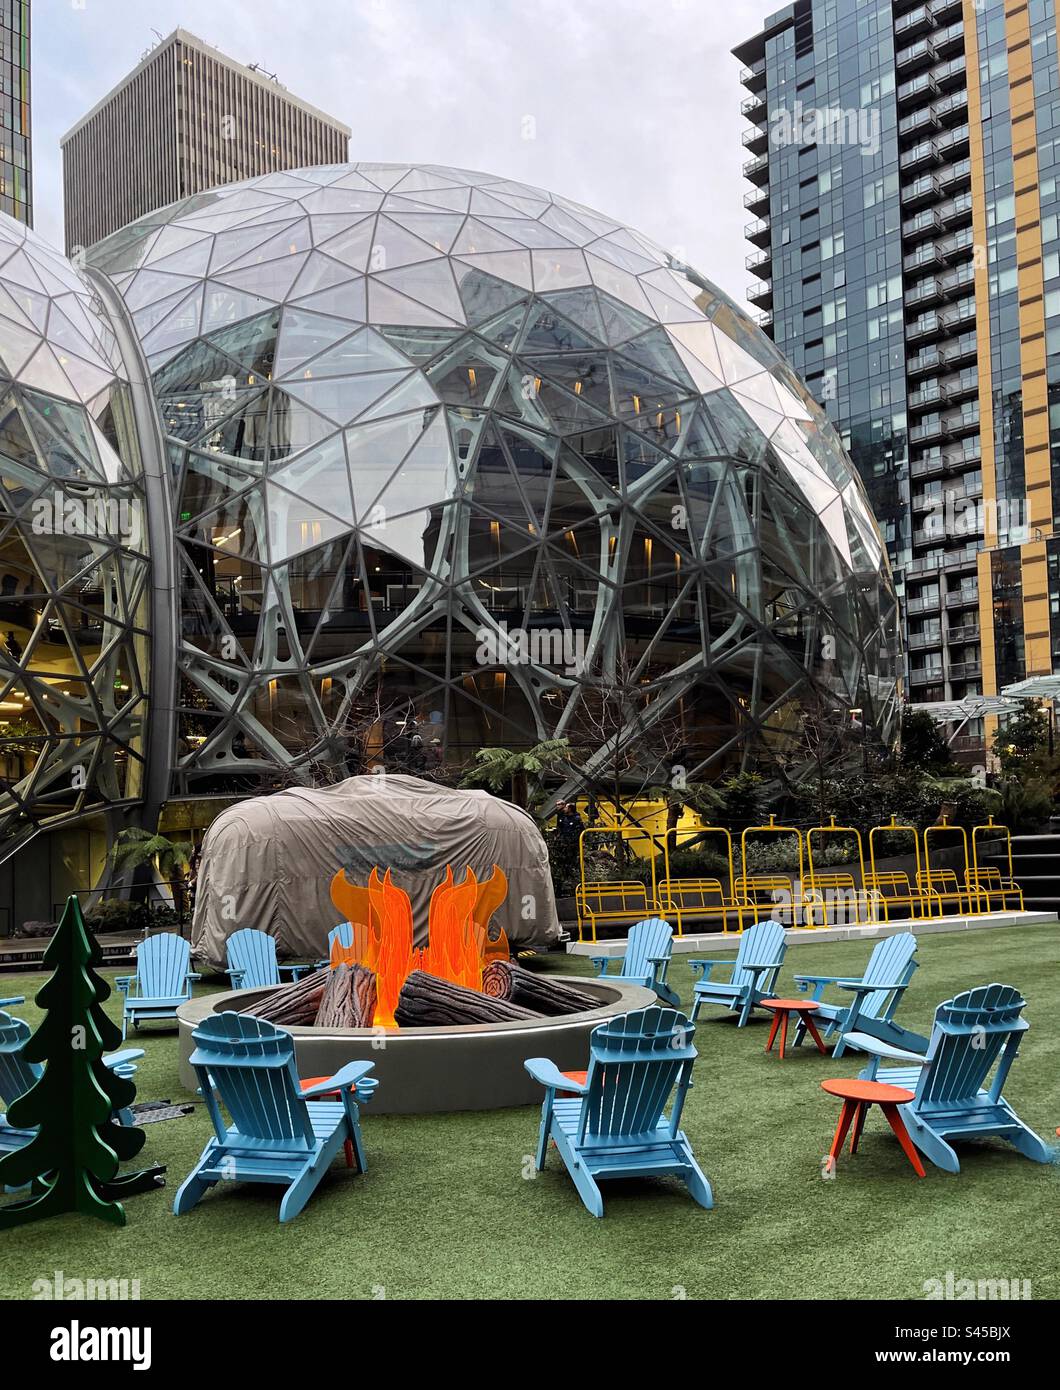 Amazon-Sphären in der Innenstadt von Seattle Stockfoto